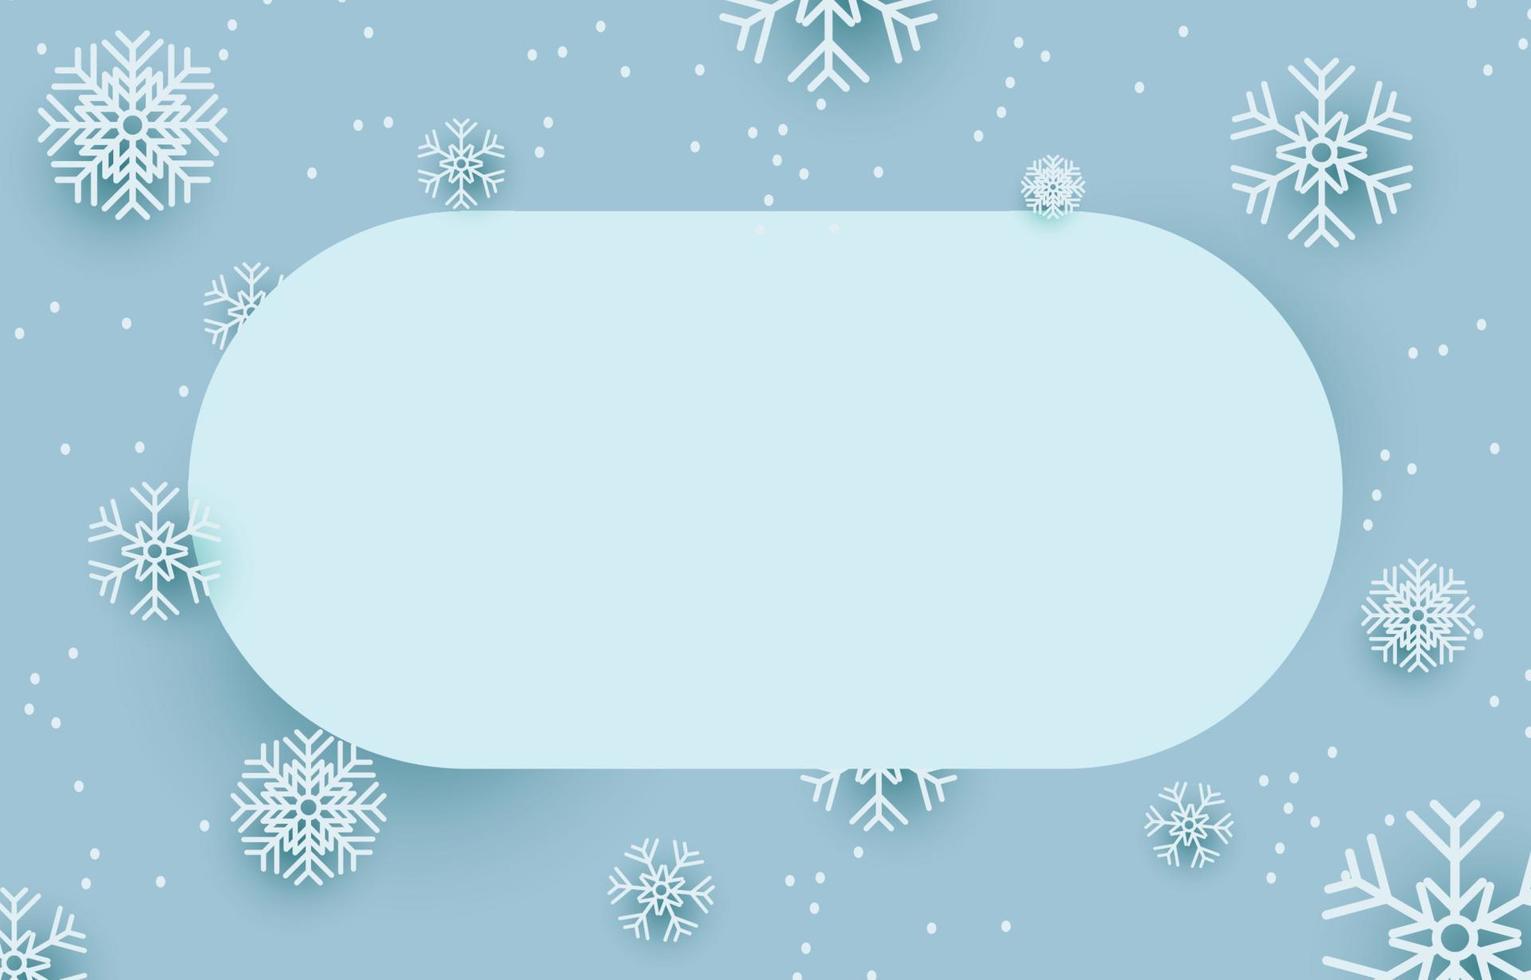 leggero blu vuoto ovale etichetta decorato con fiocchi di neve, vettore illustrazione neve di inverno, concetto Natale e nuovo anno.